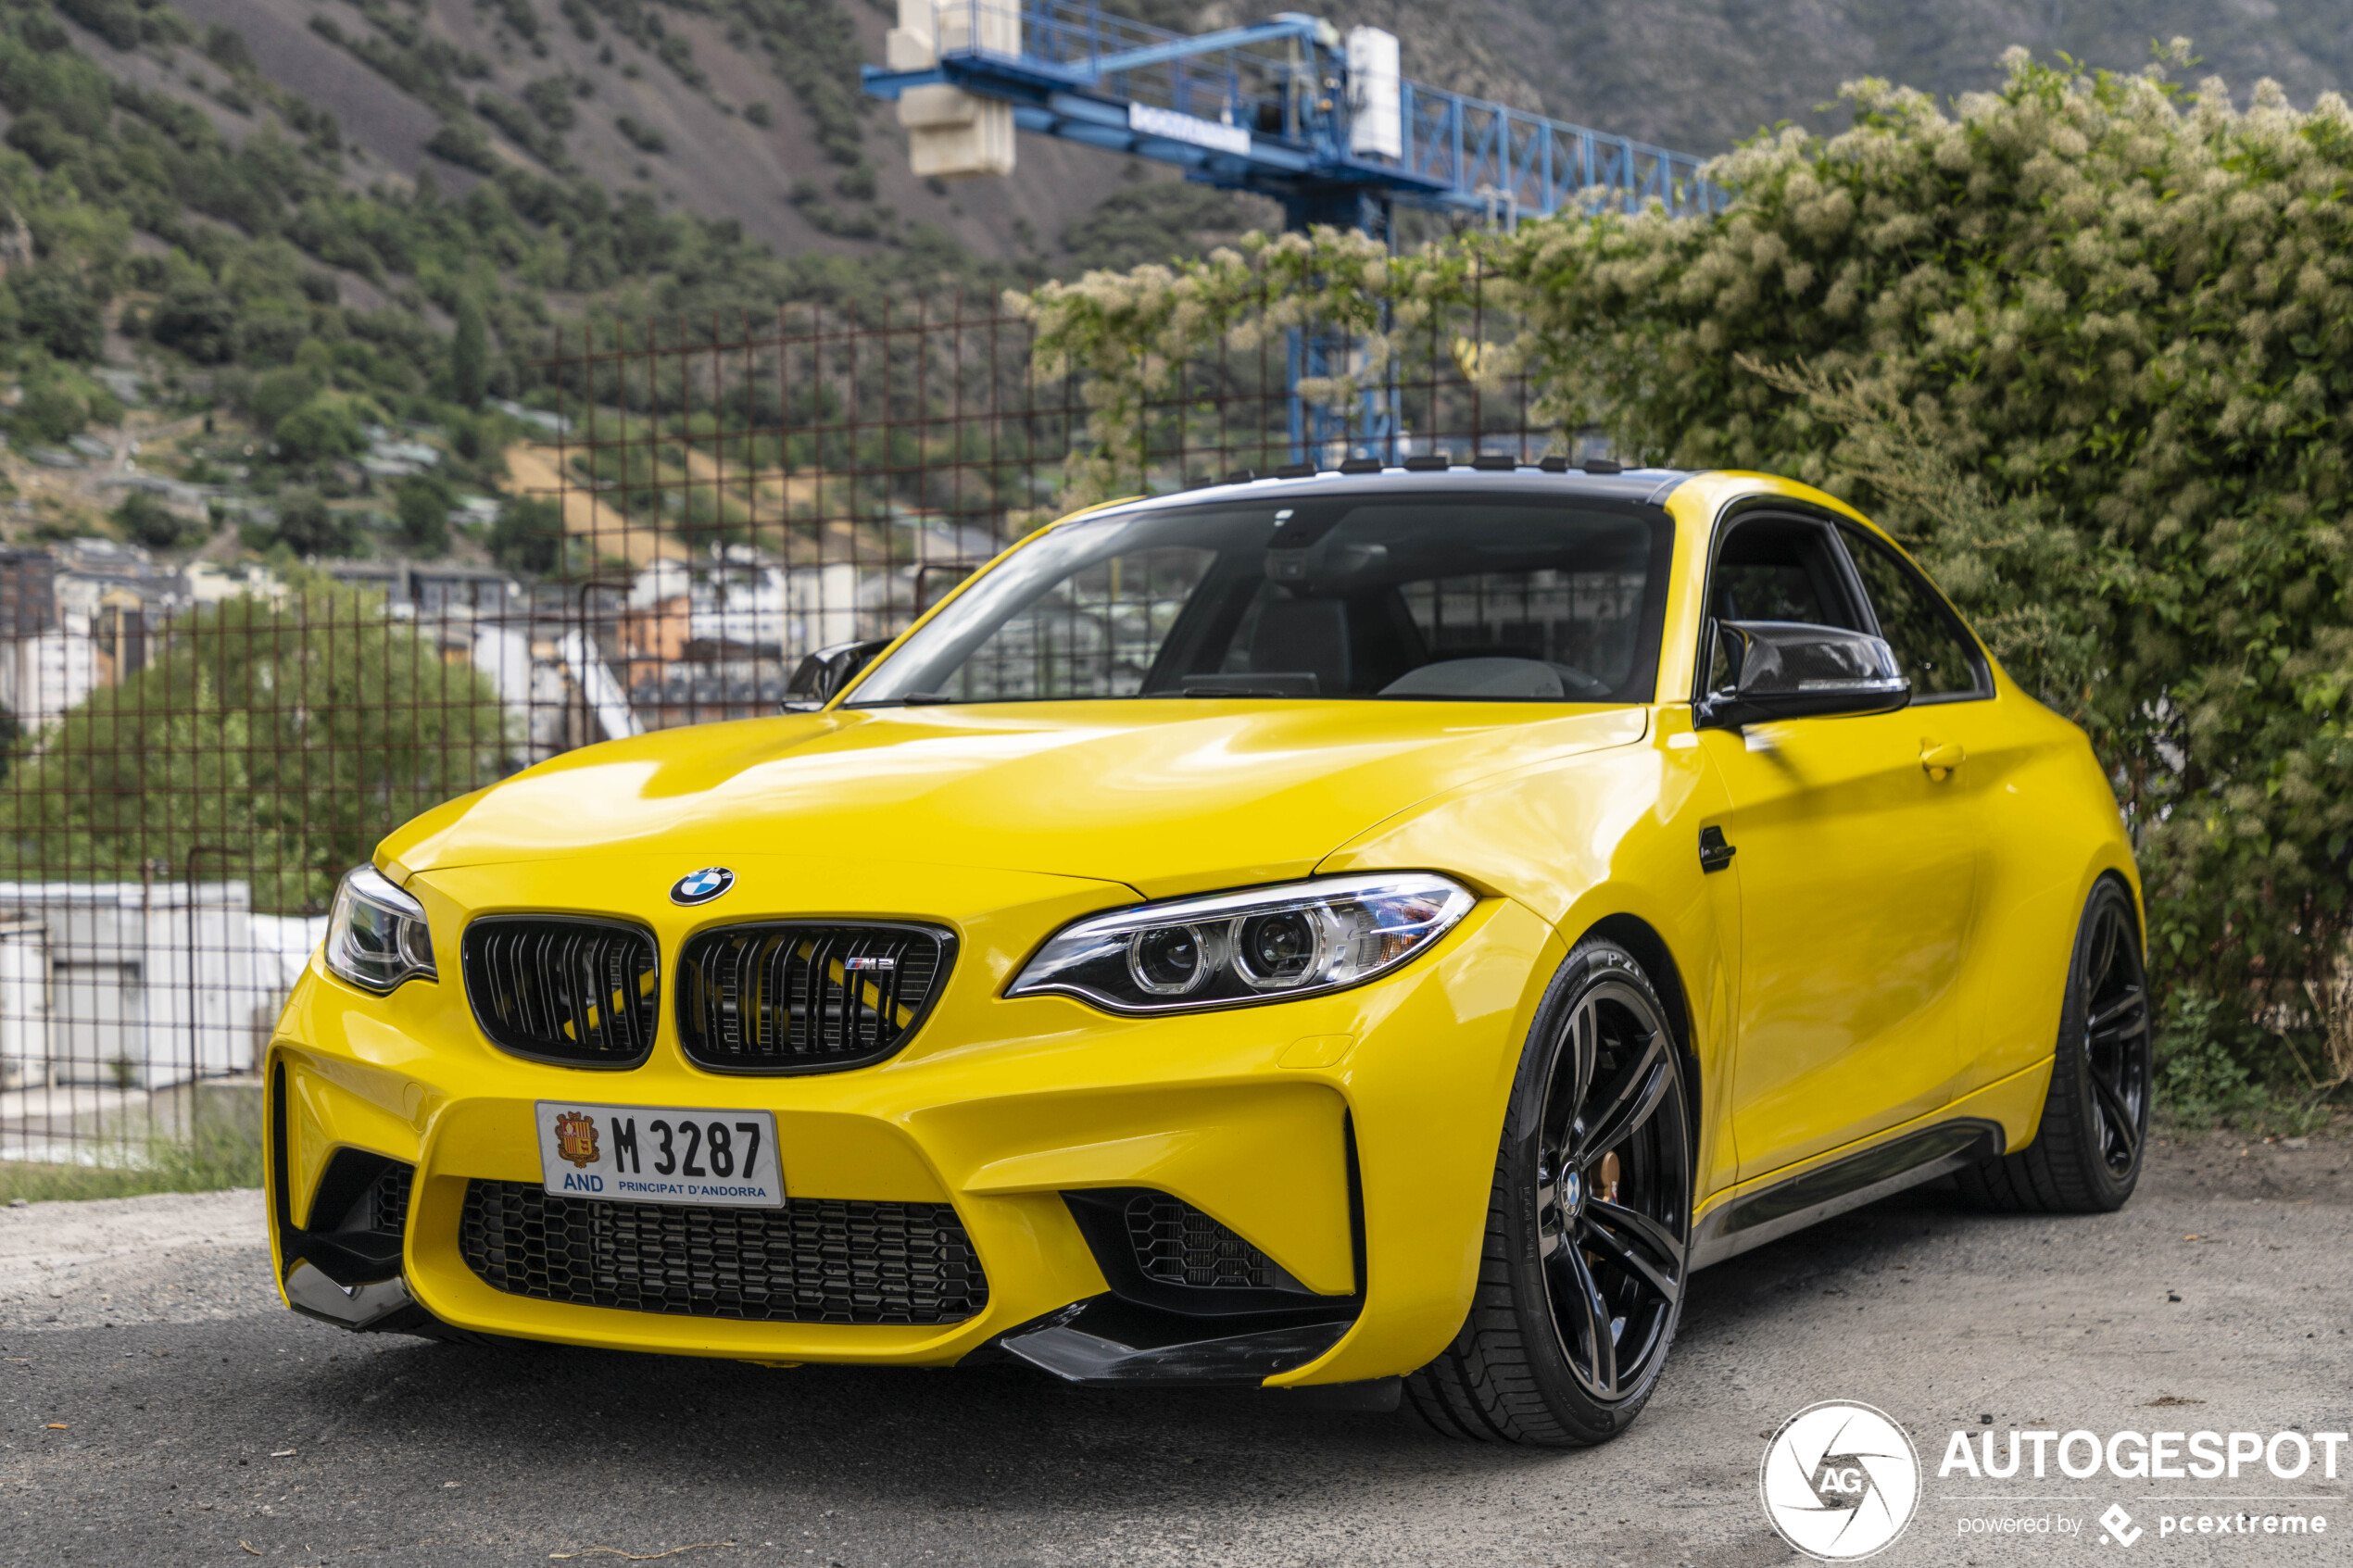 Gele BMW M2 is heel erg gaaf geworden